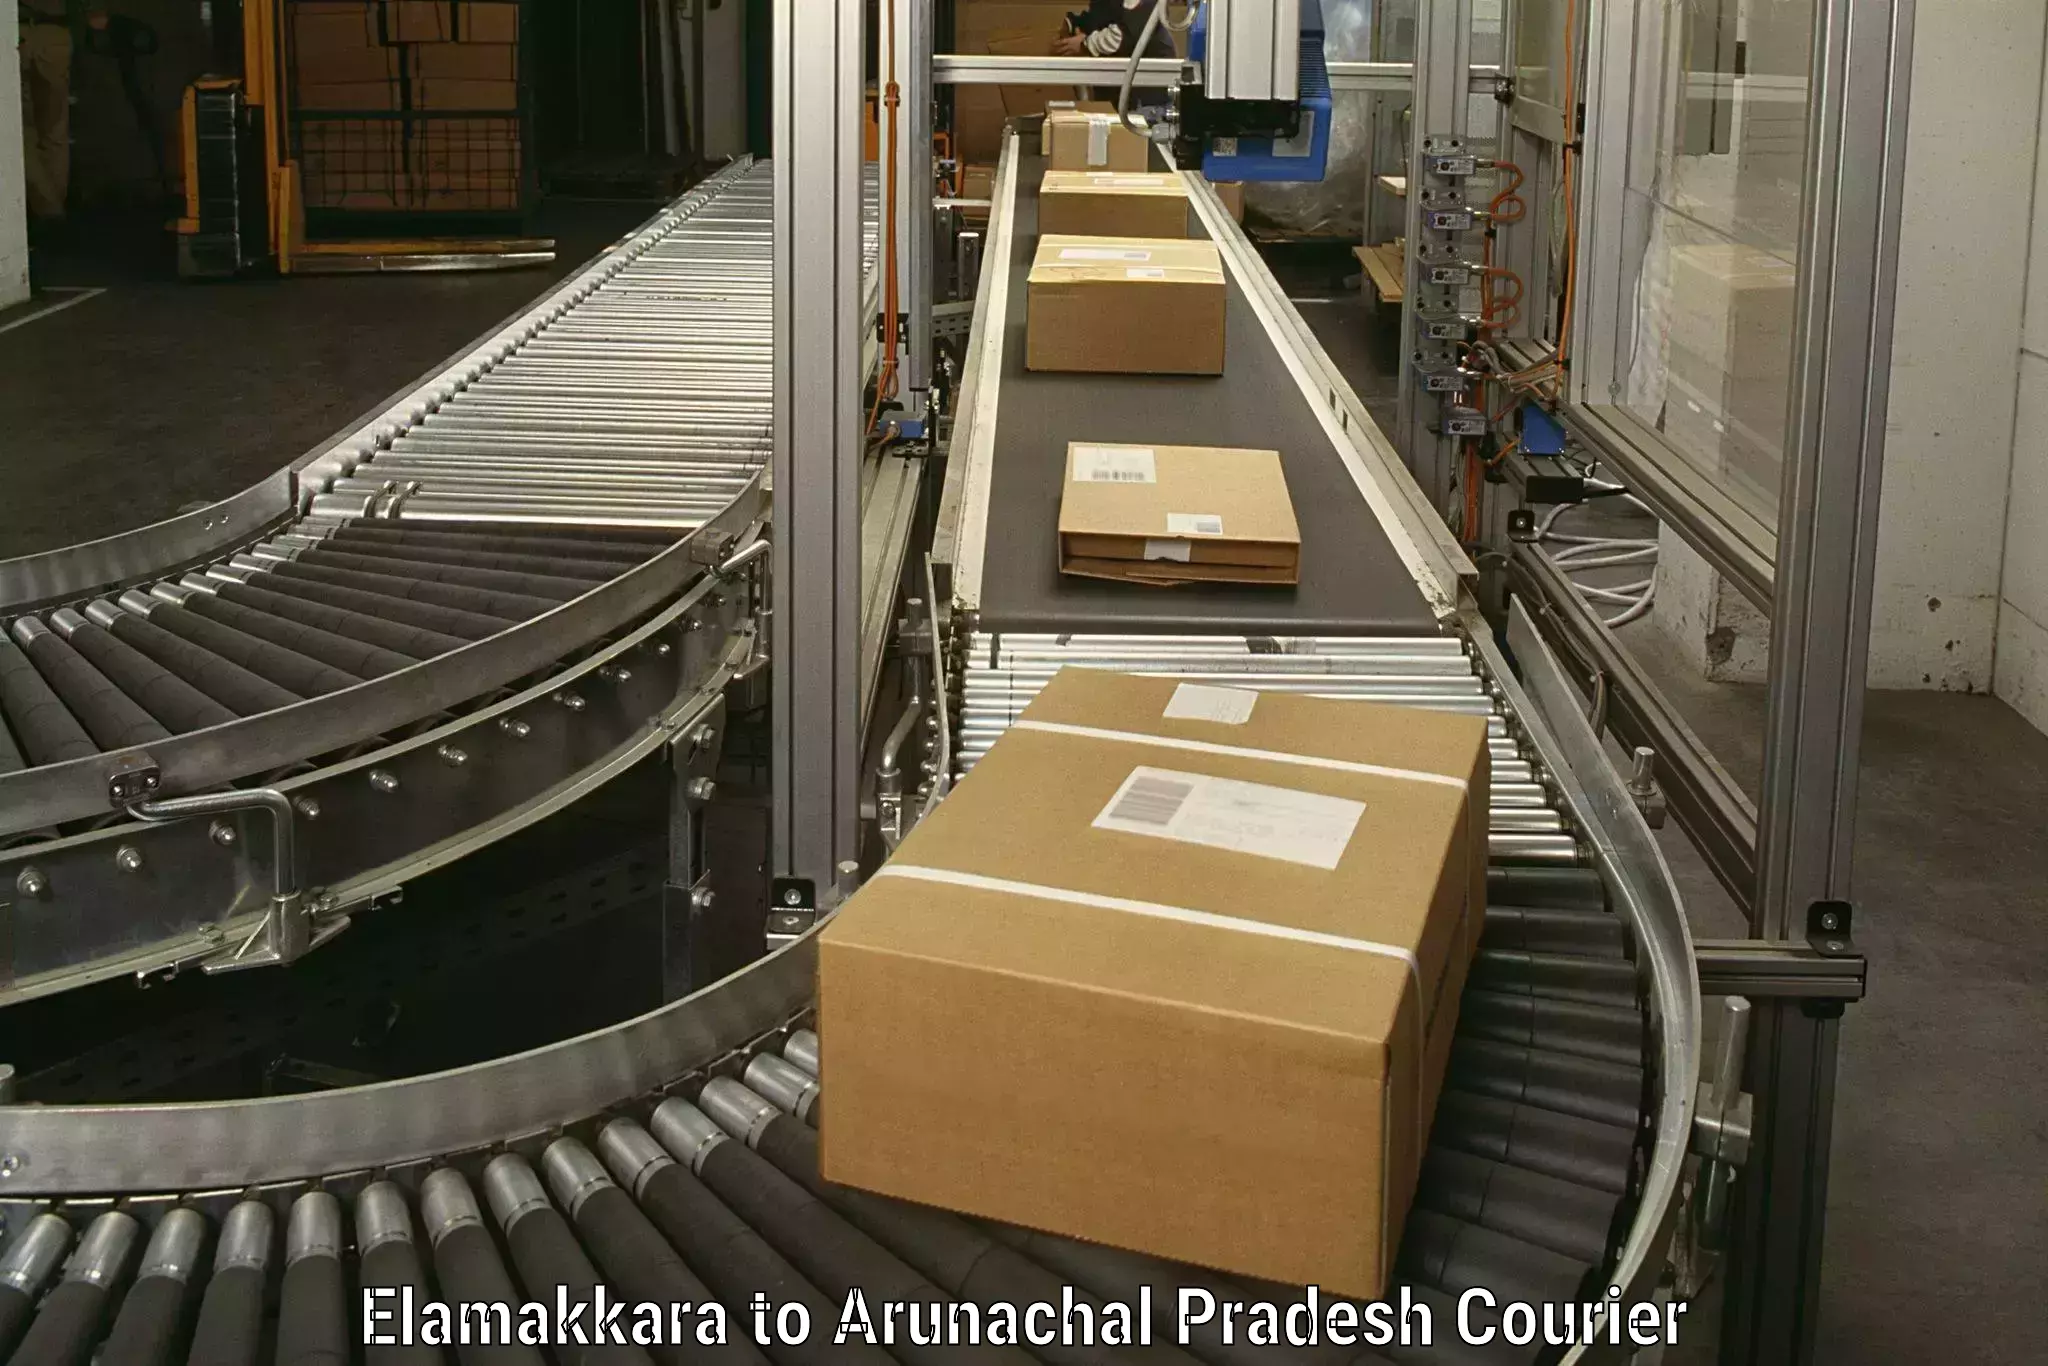 Furniture moving experts Elamakkara to Arunachal Pradesh